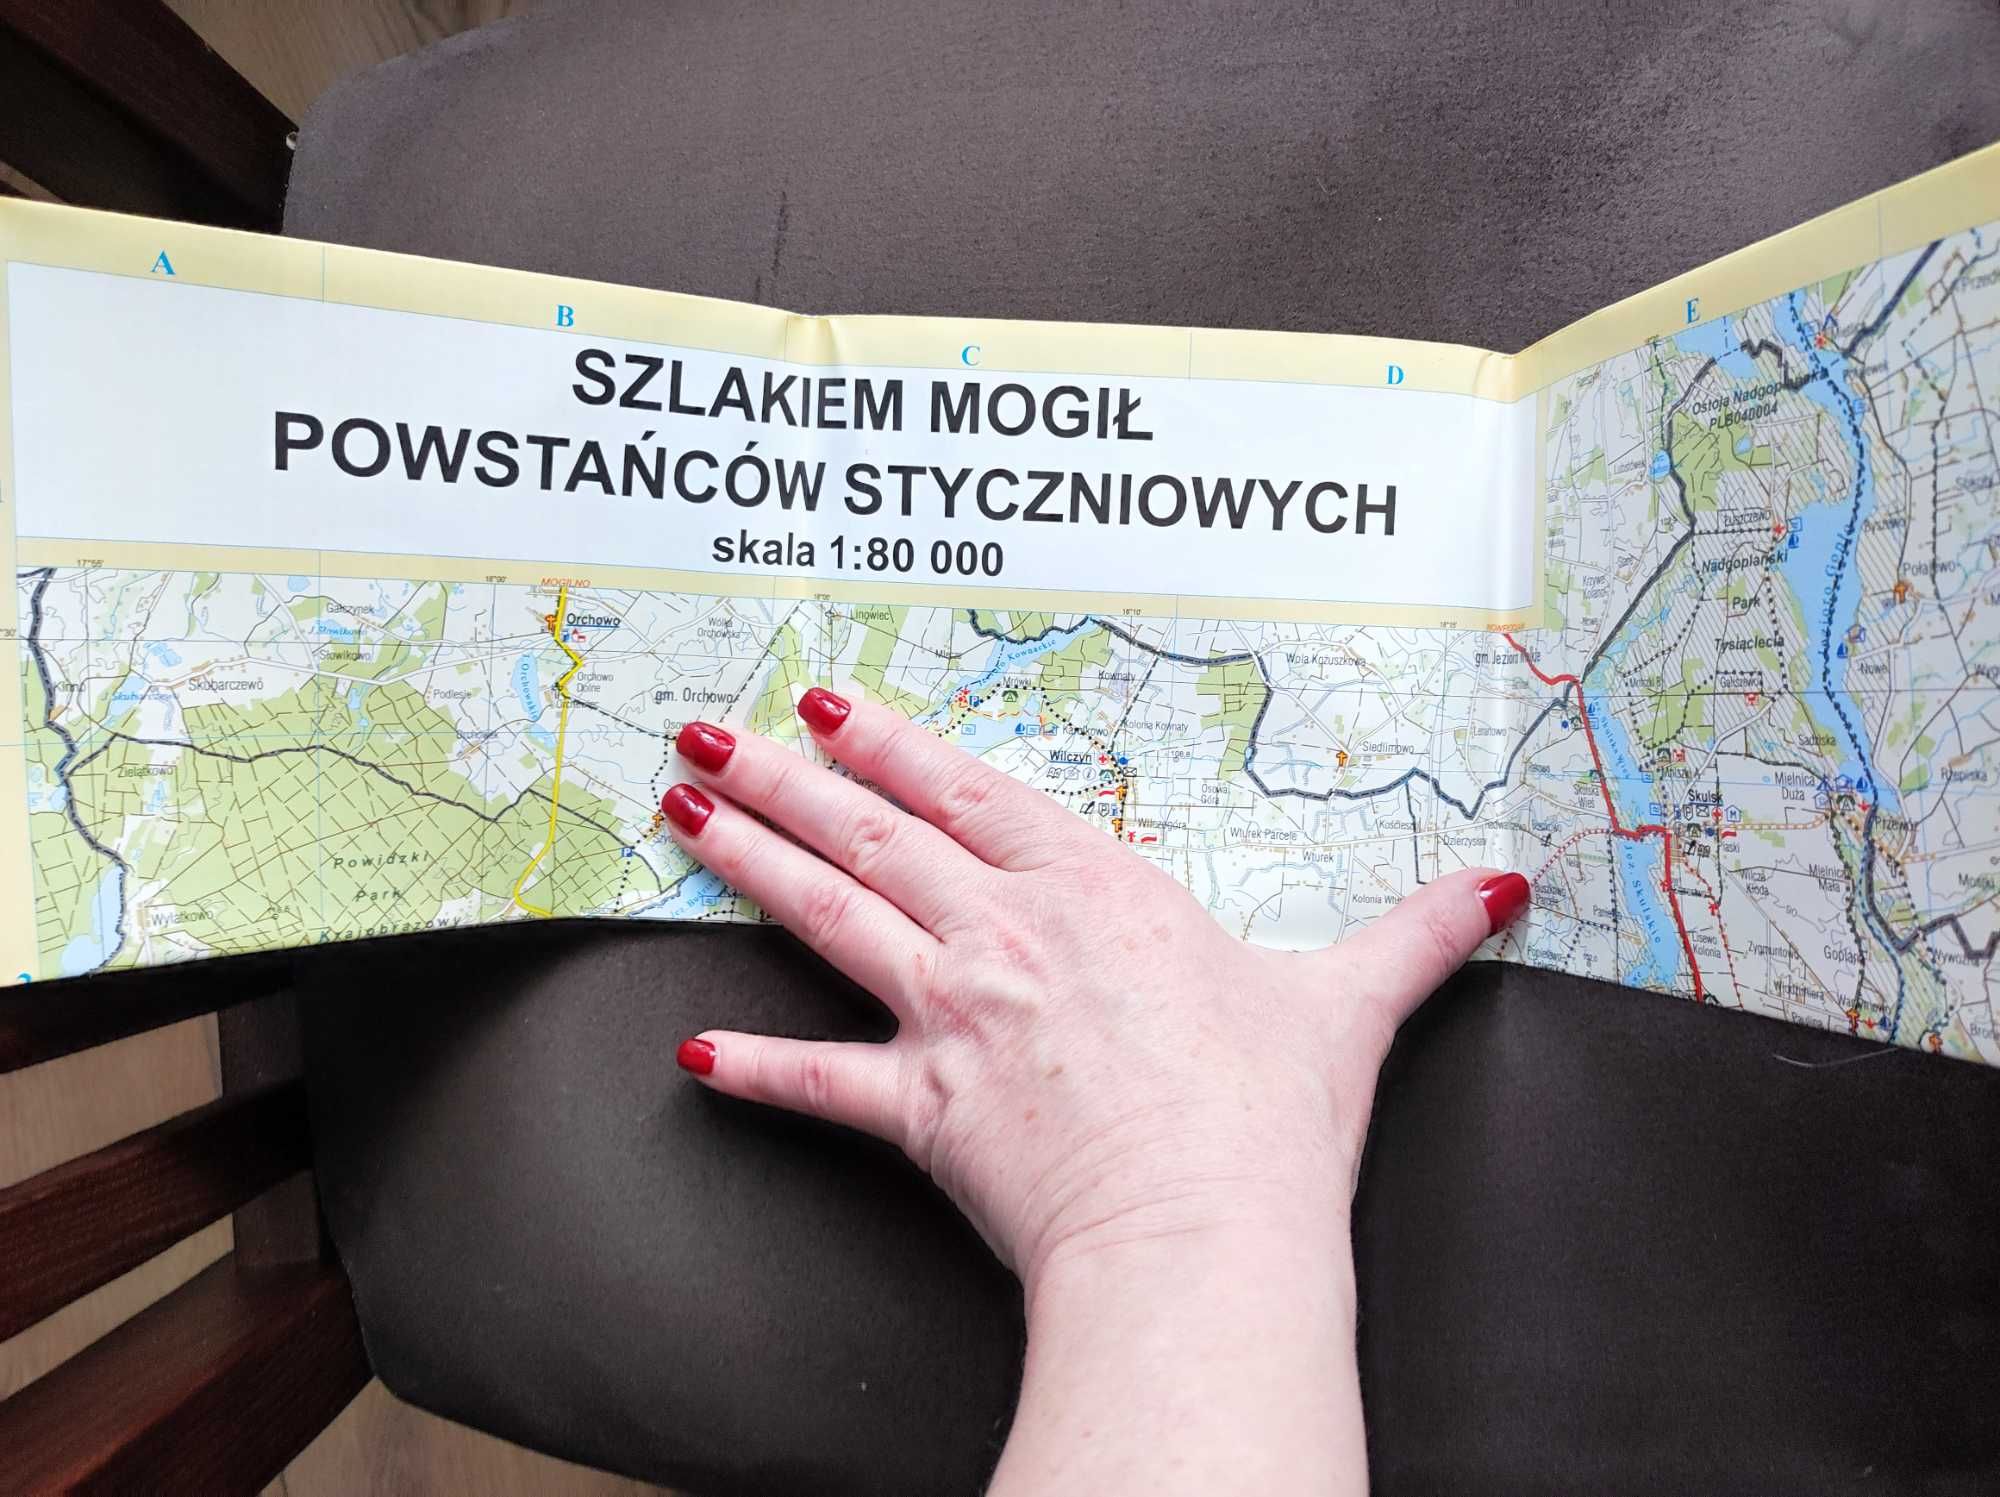 Szlakiem mogił Powstańców Styczniowych - mapa, płyta CD komplet